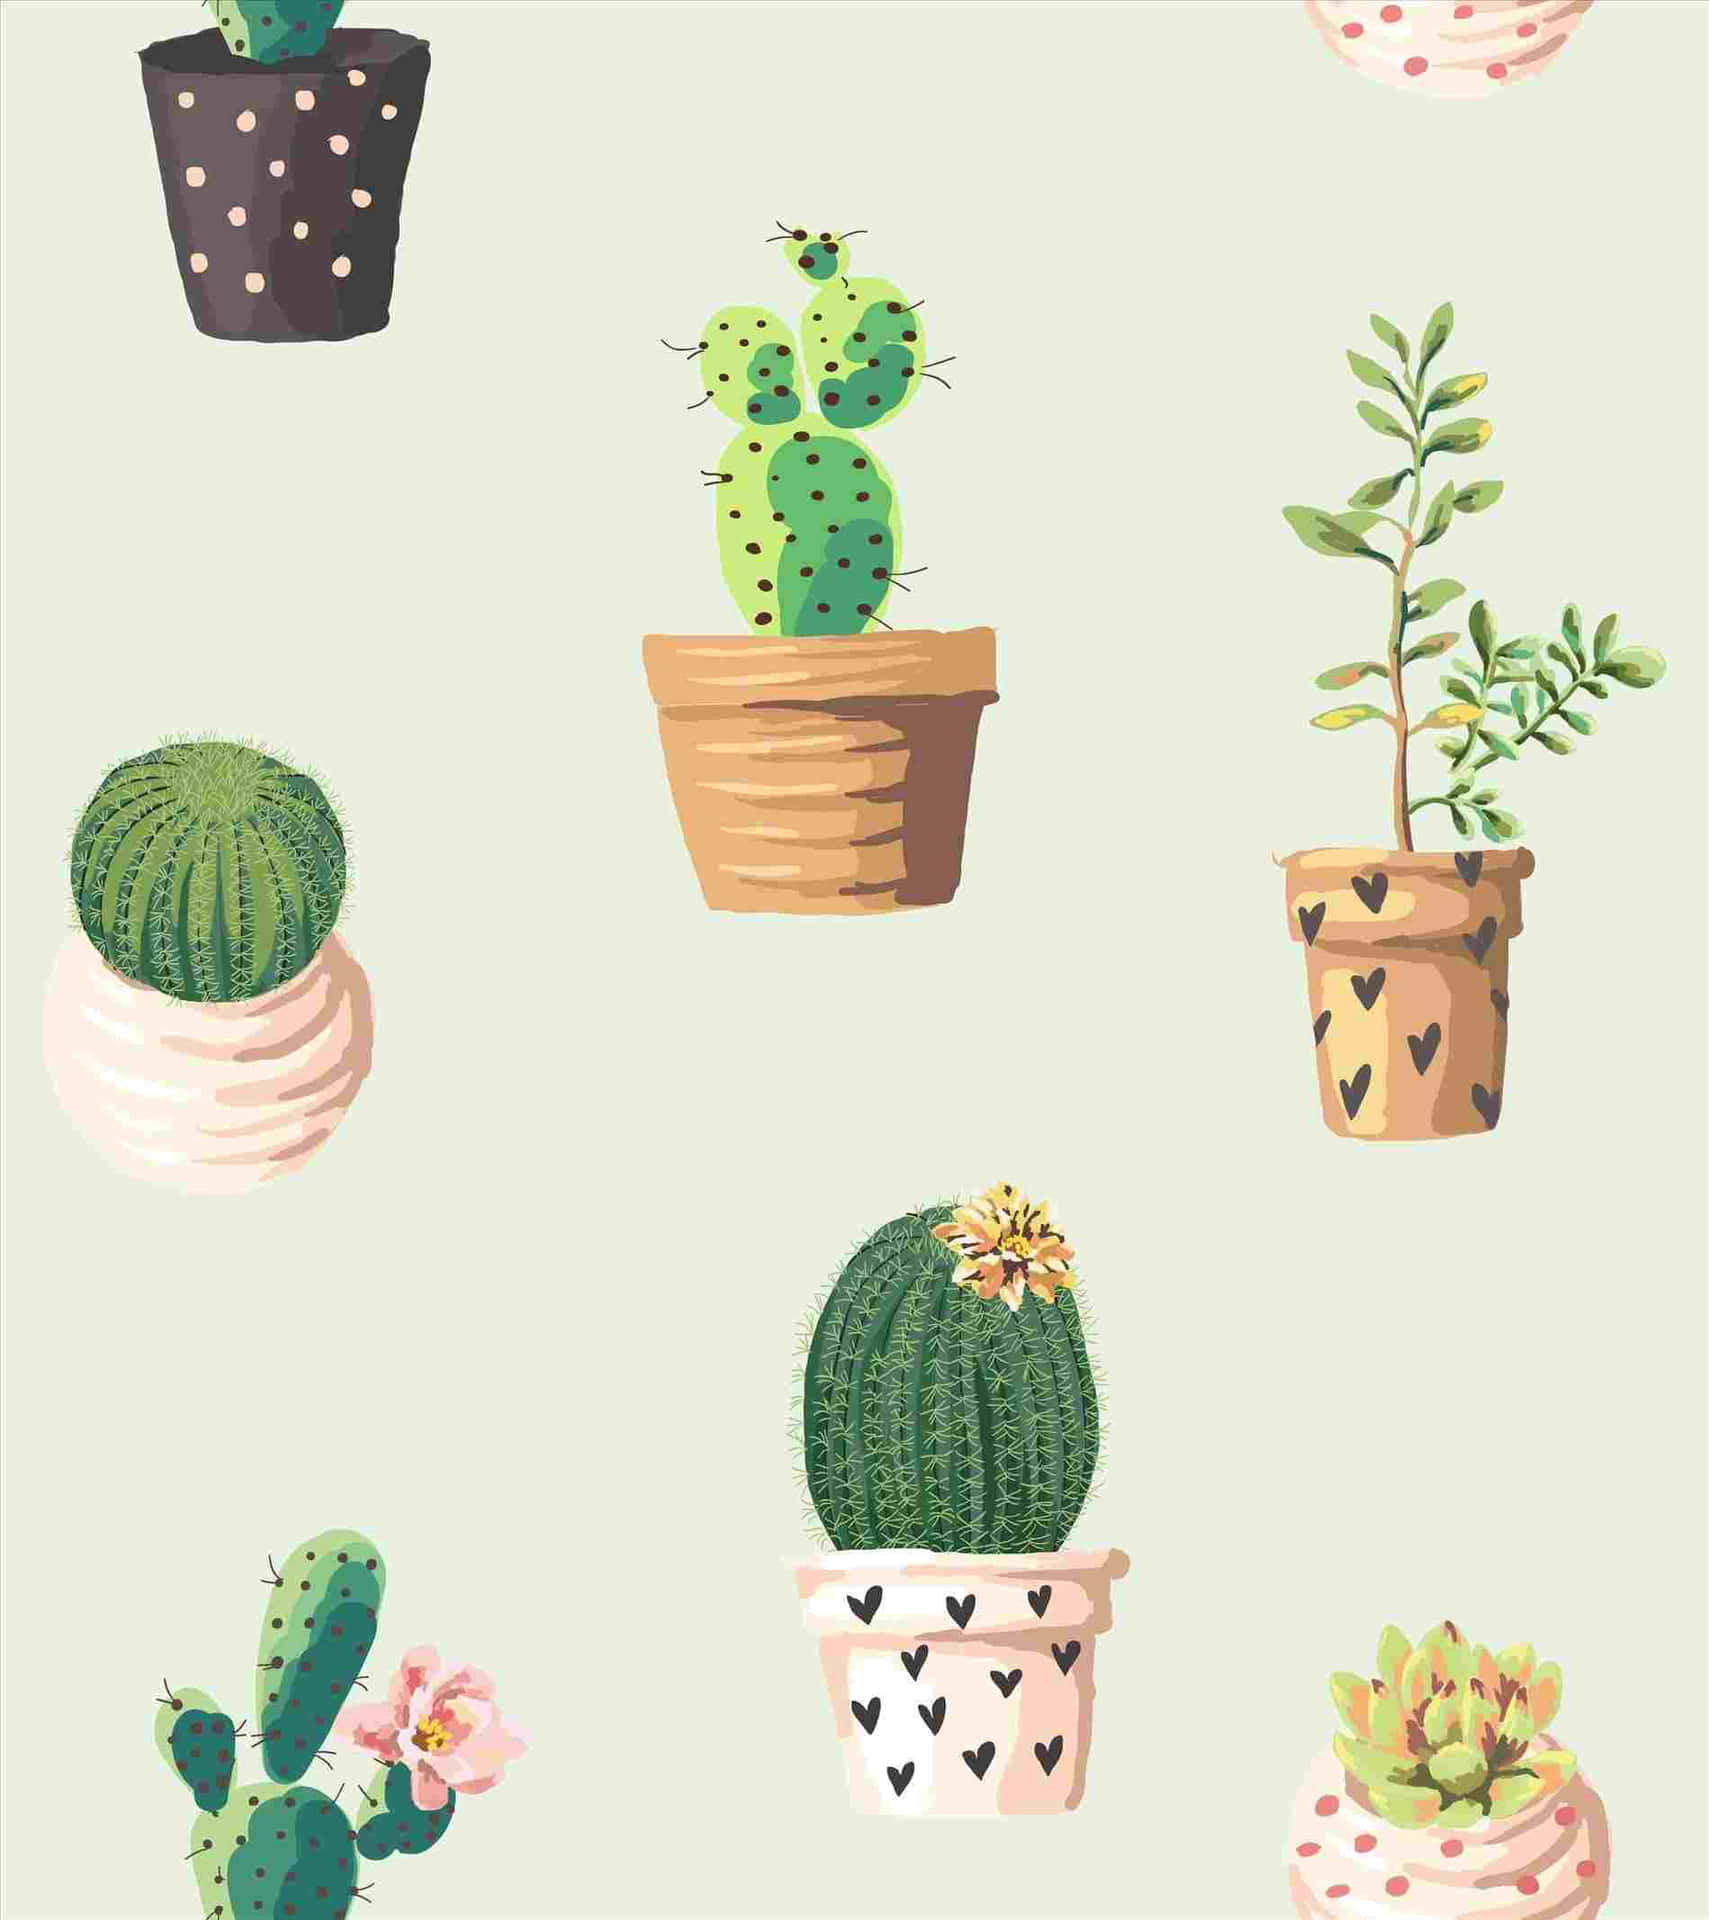 Enbakgrundsbild Med Kaktusväxter I Krukor. Wallpaper